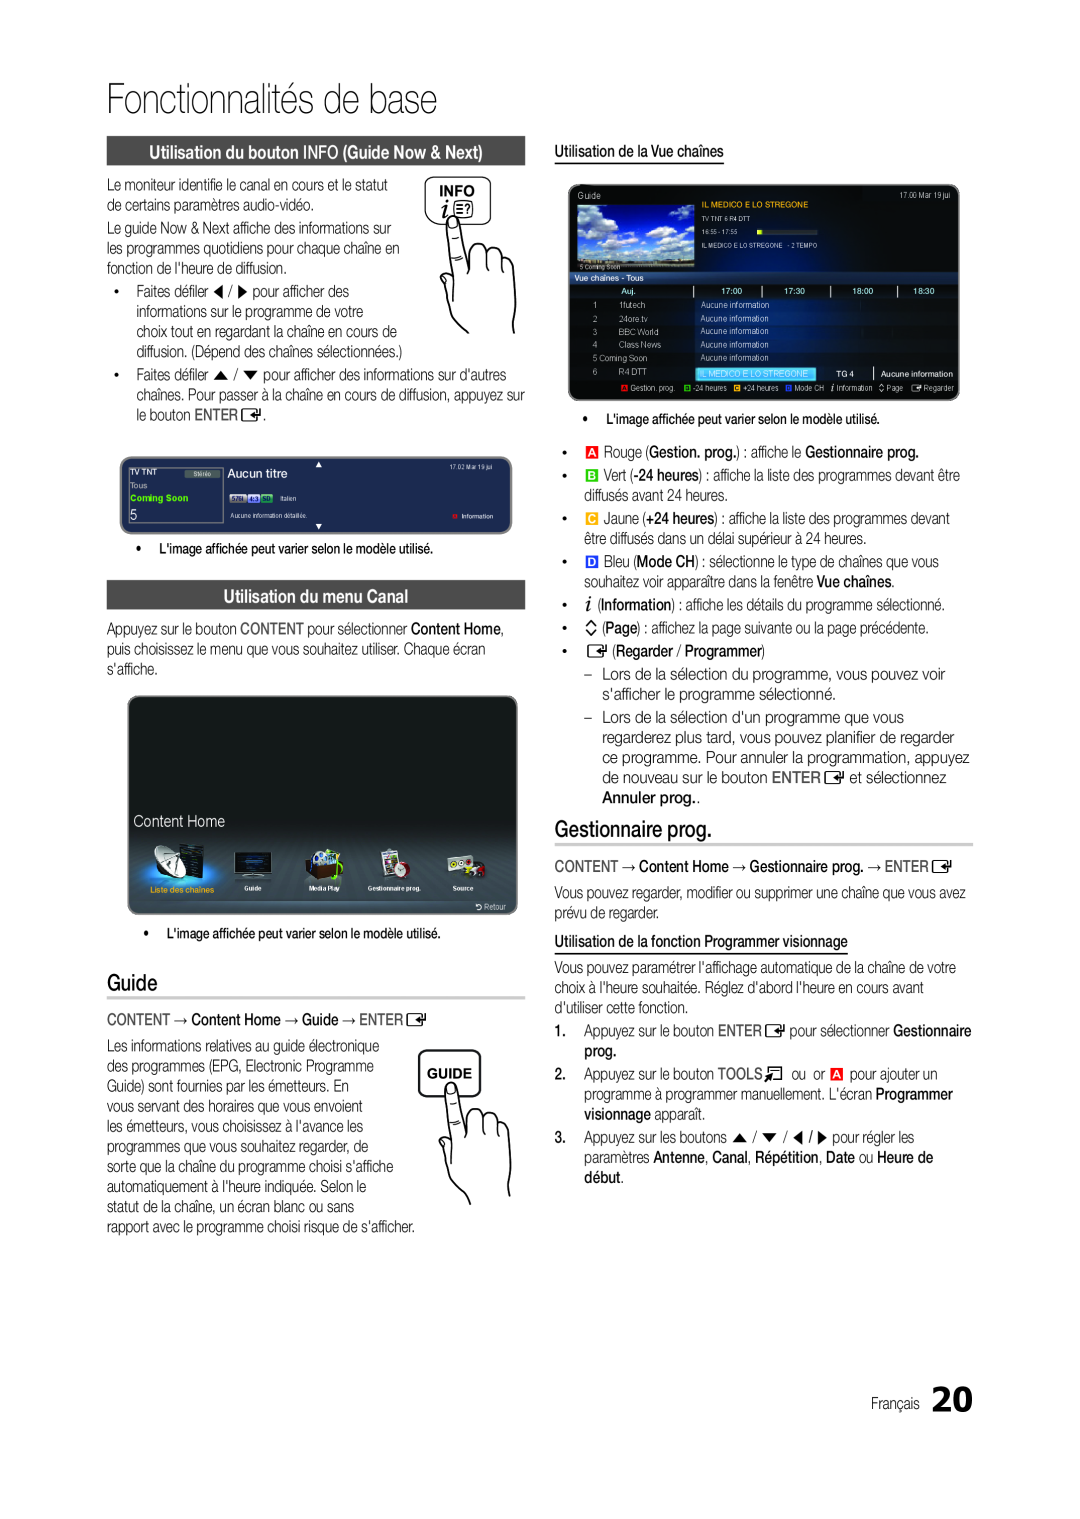 Samsung LT24C300EWZ/EN manual Gestionnaire prog, Utilisation du bouton INFO Guide Now & Next, Utilisation du menu Canal 